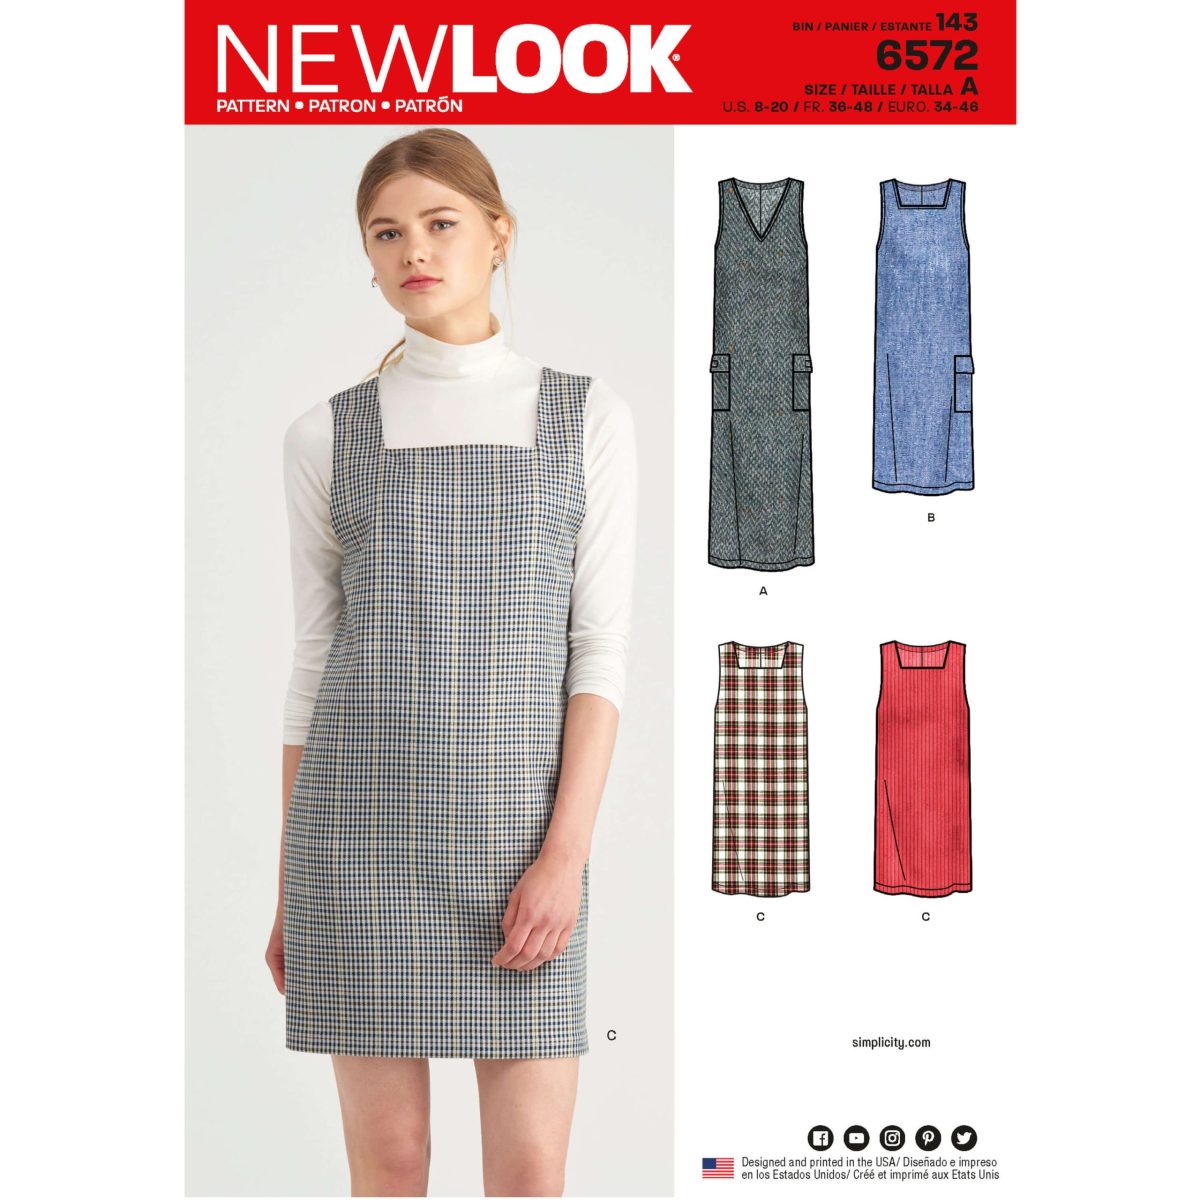 New Look Pattern 6572 Misses' Jumper Dress